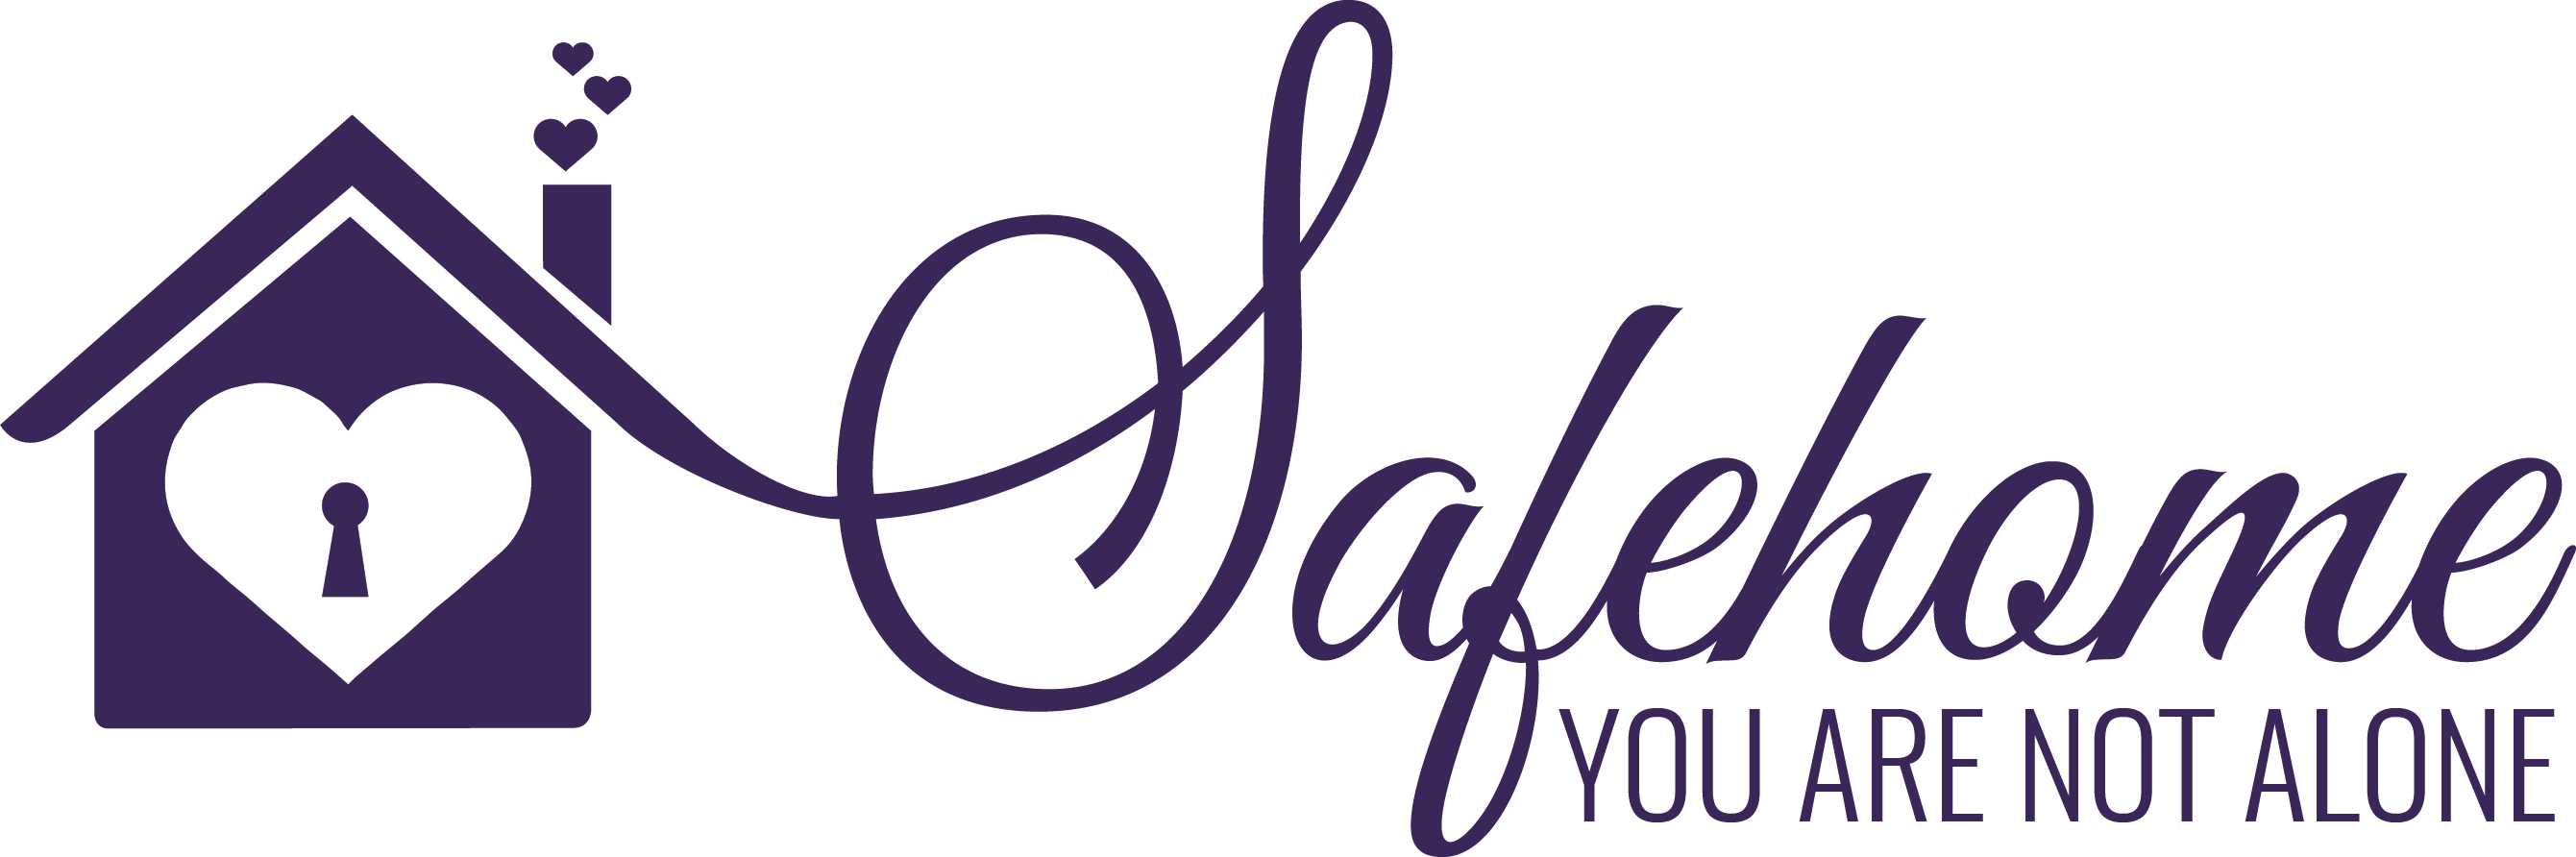 Safehomes_Logo-03